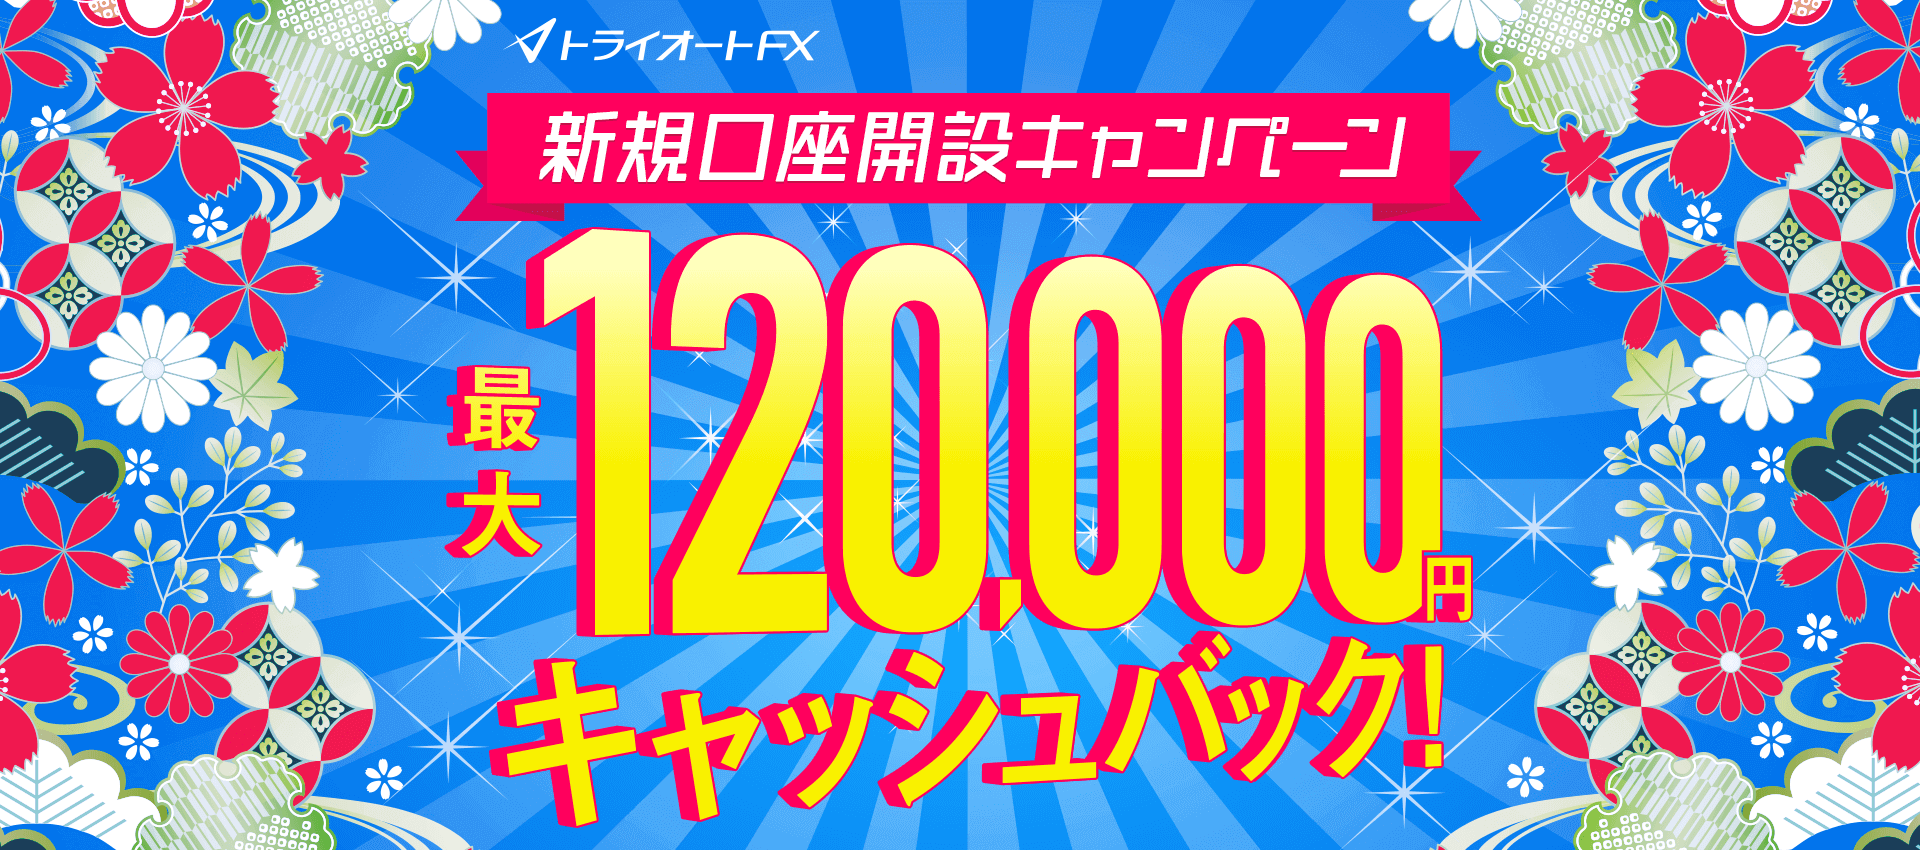 トライオートFX新規口座開設キャンペーン 最大120,000円キャッシュバック！